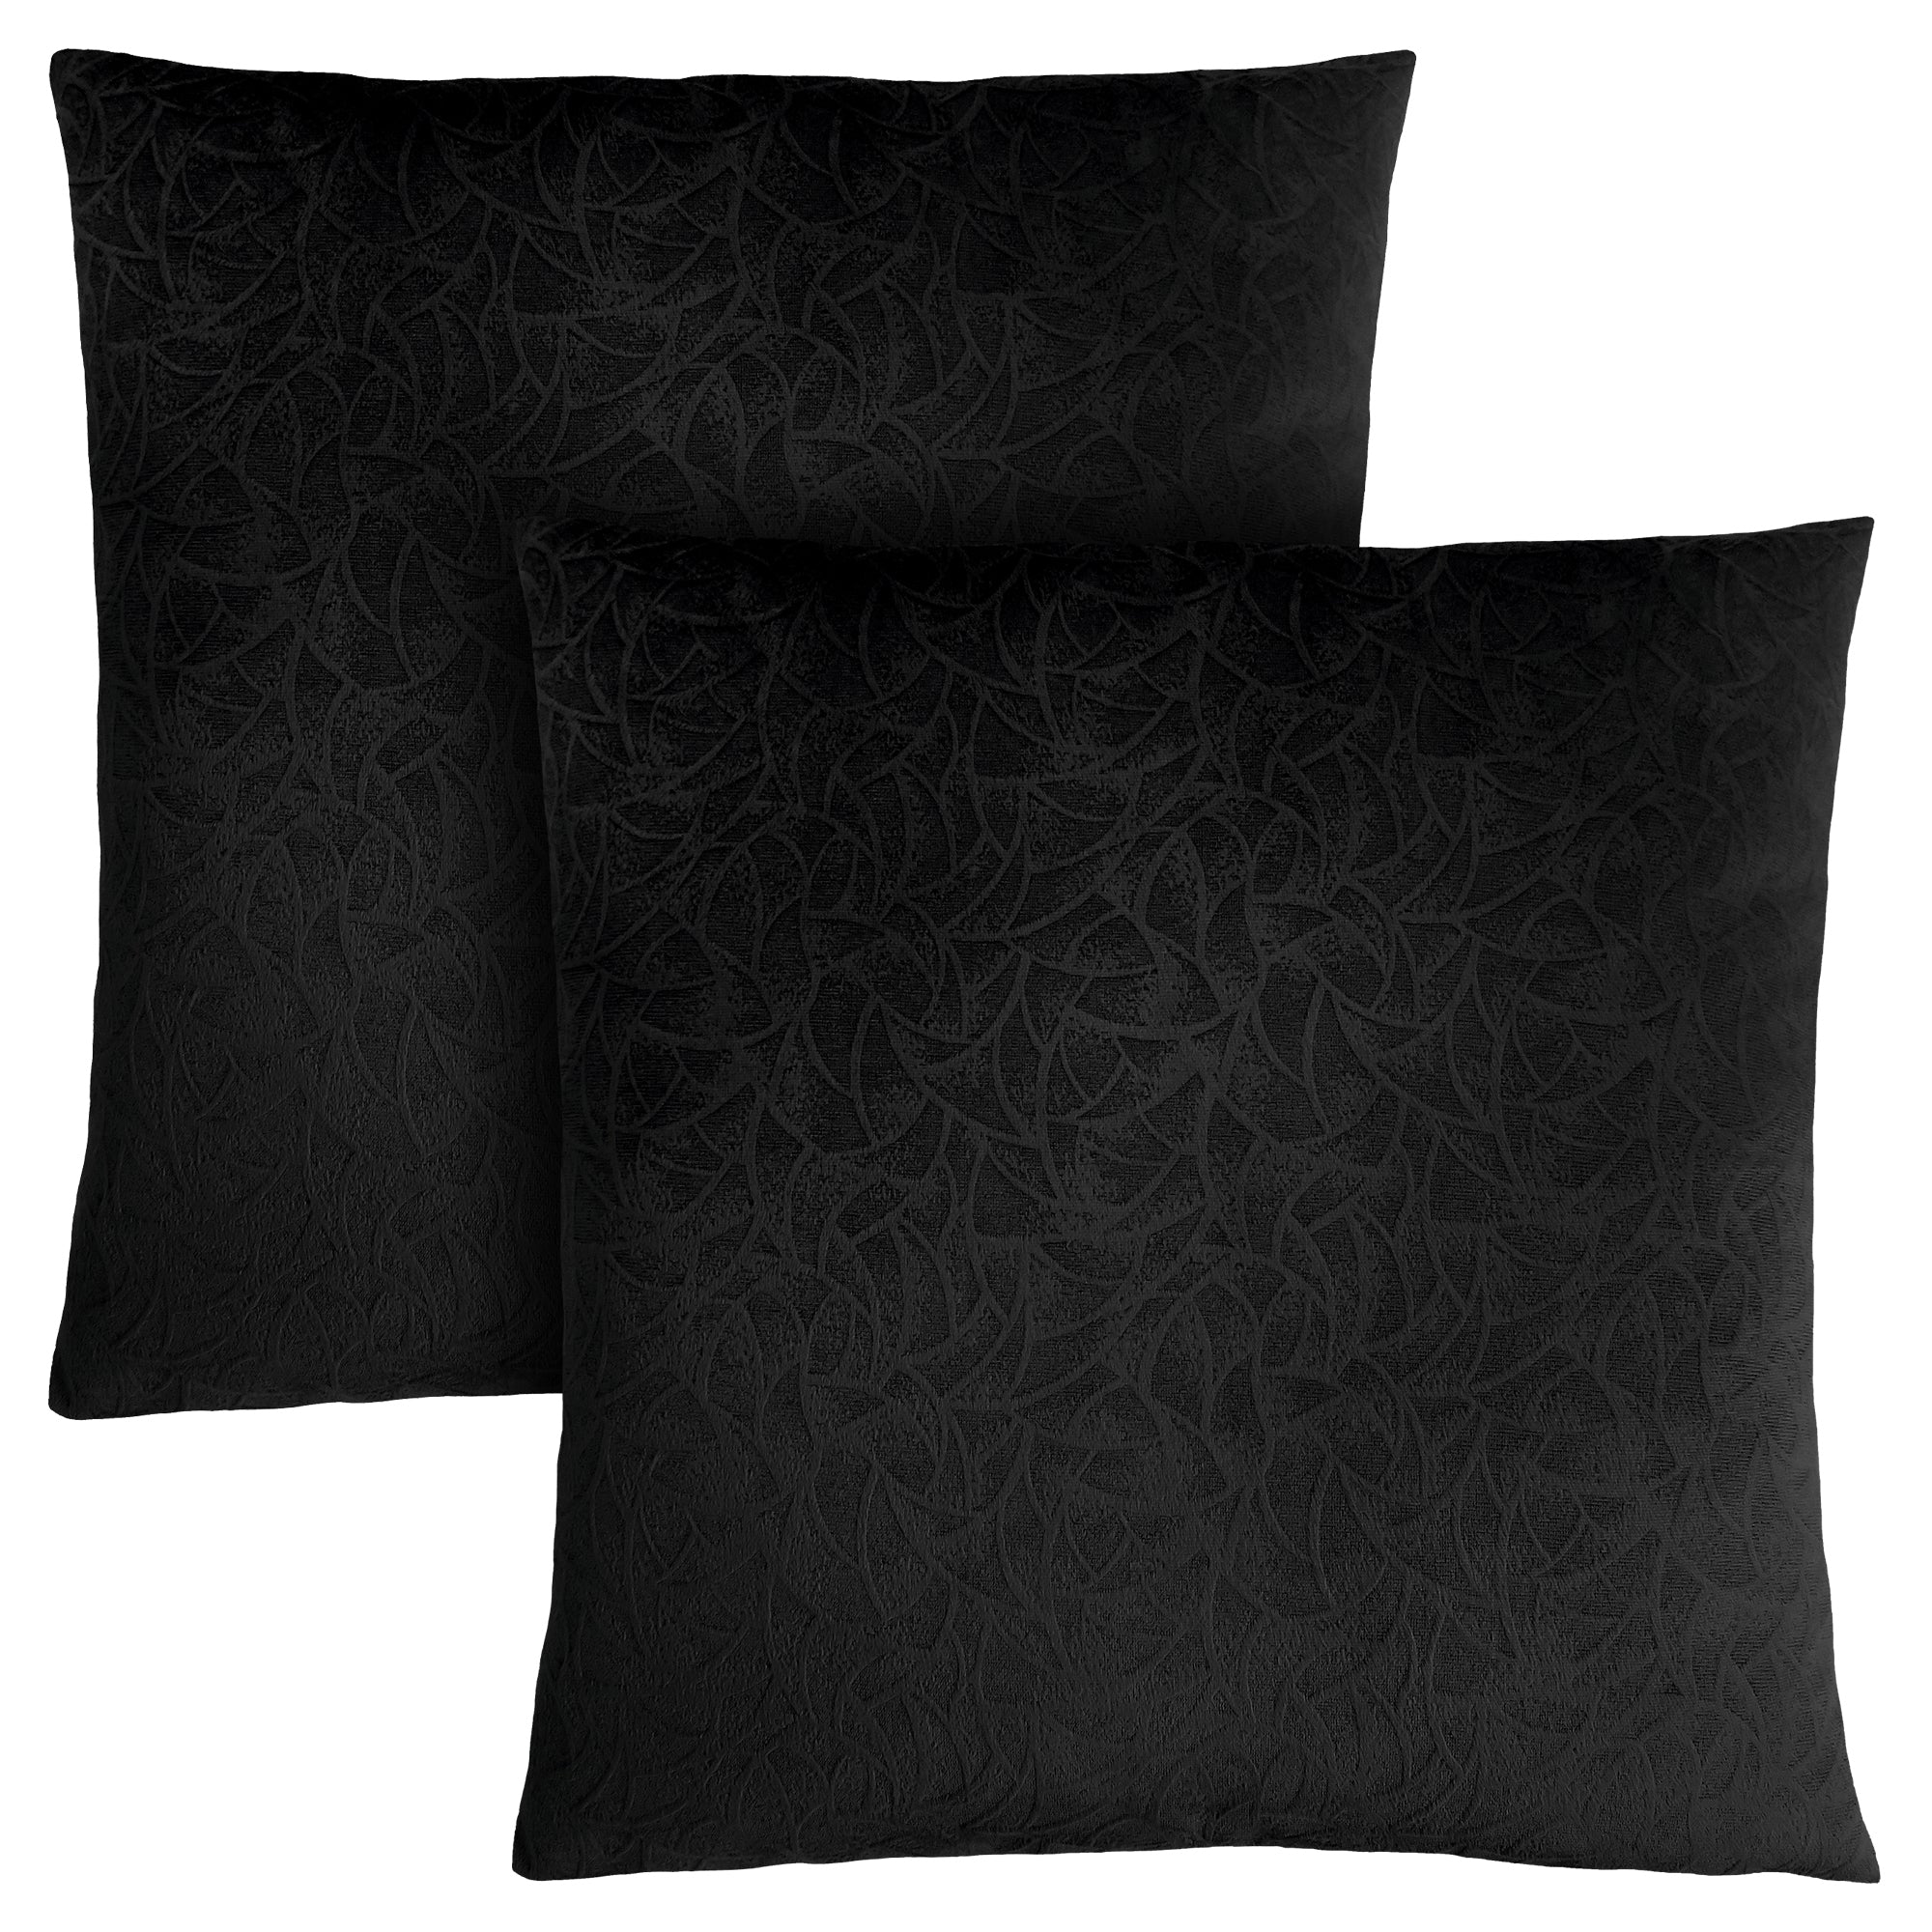 Pillow - 18X 18 / Black Floral Velvet / 2Pcs